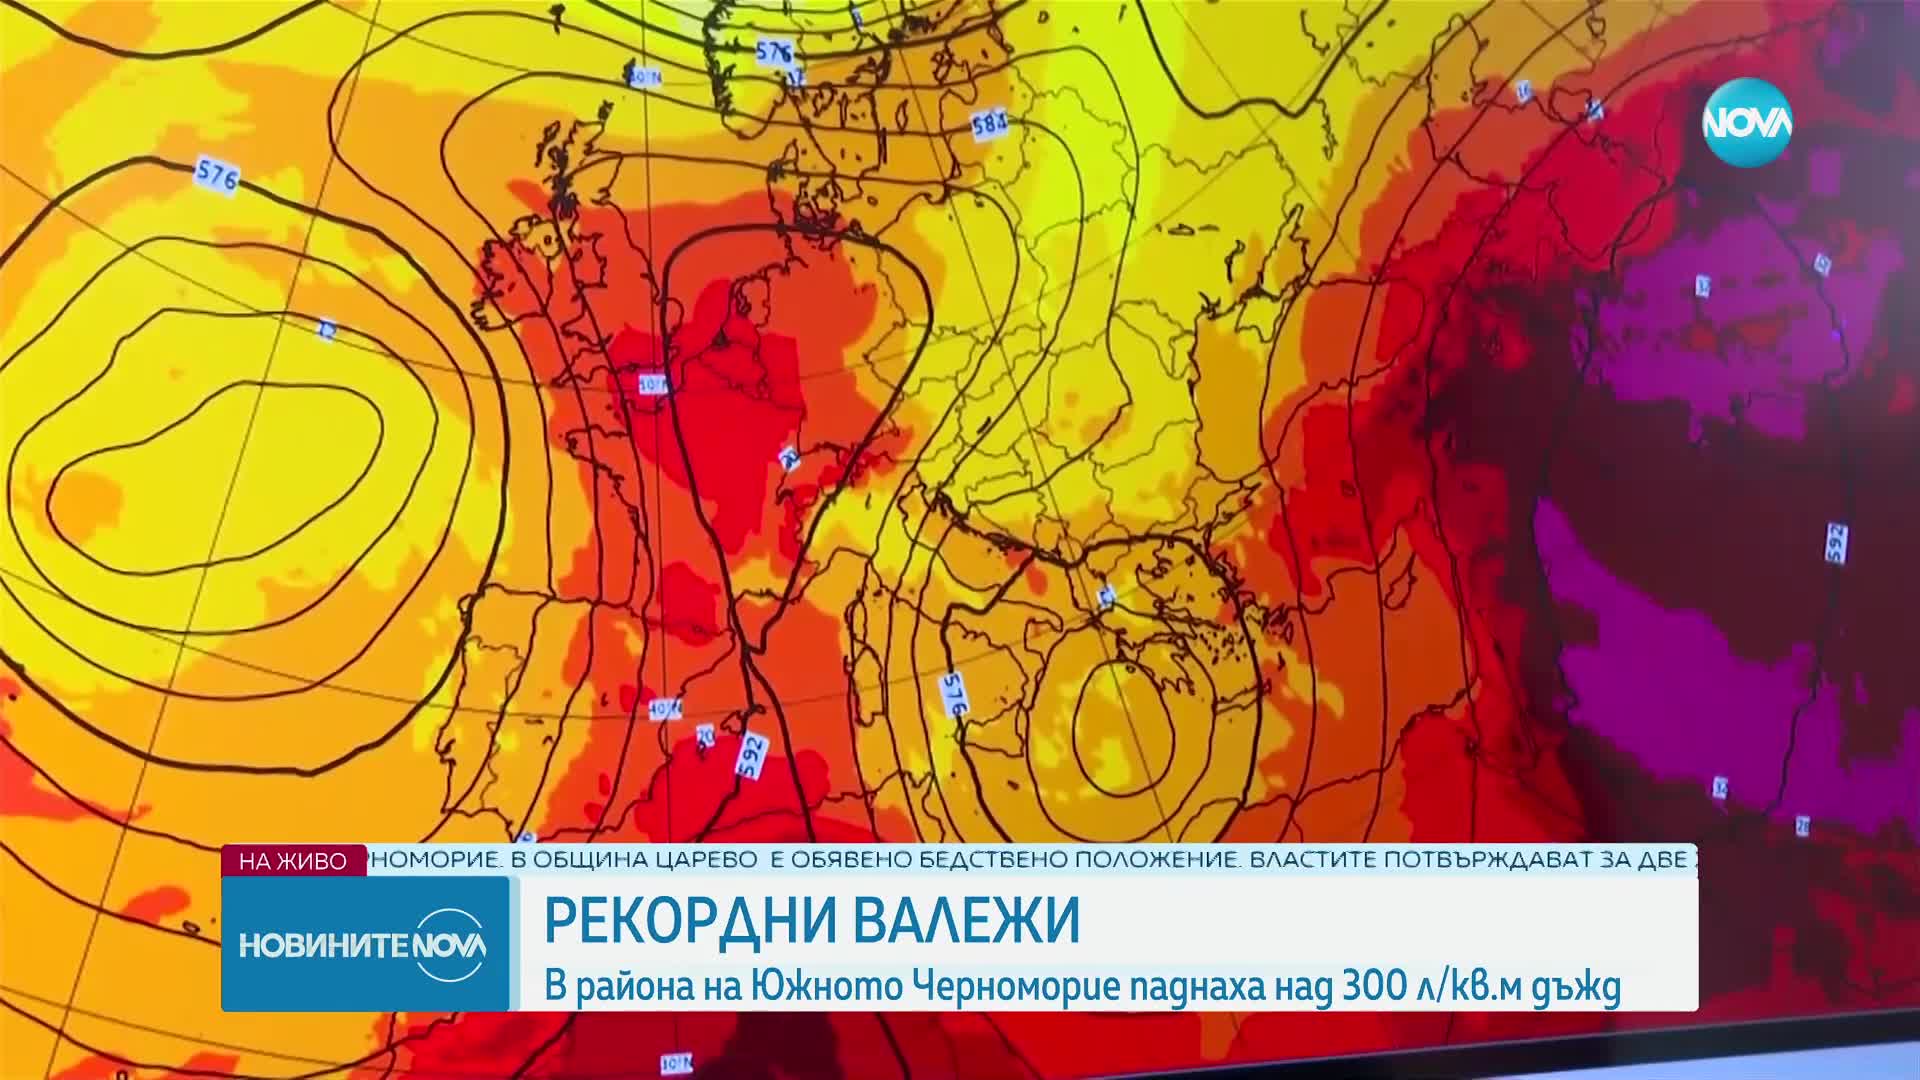 РЕКОРДНИ ВАЛЕЖИ: В района на Южното Черноморие паднаха над 300 л/кв.м. дъжд